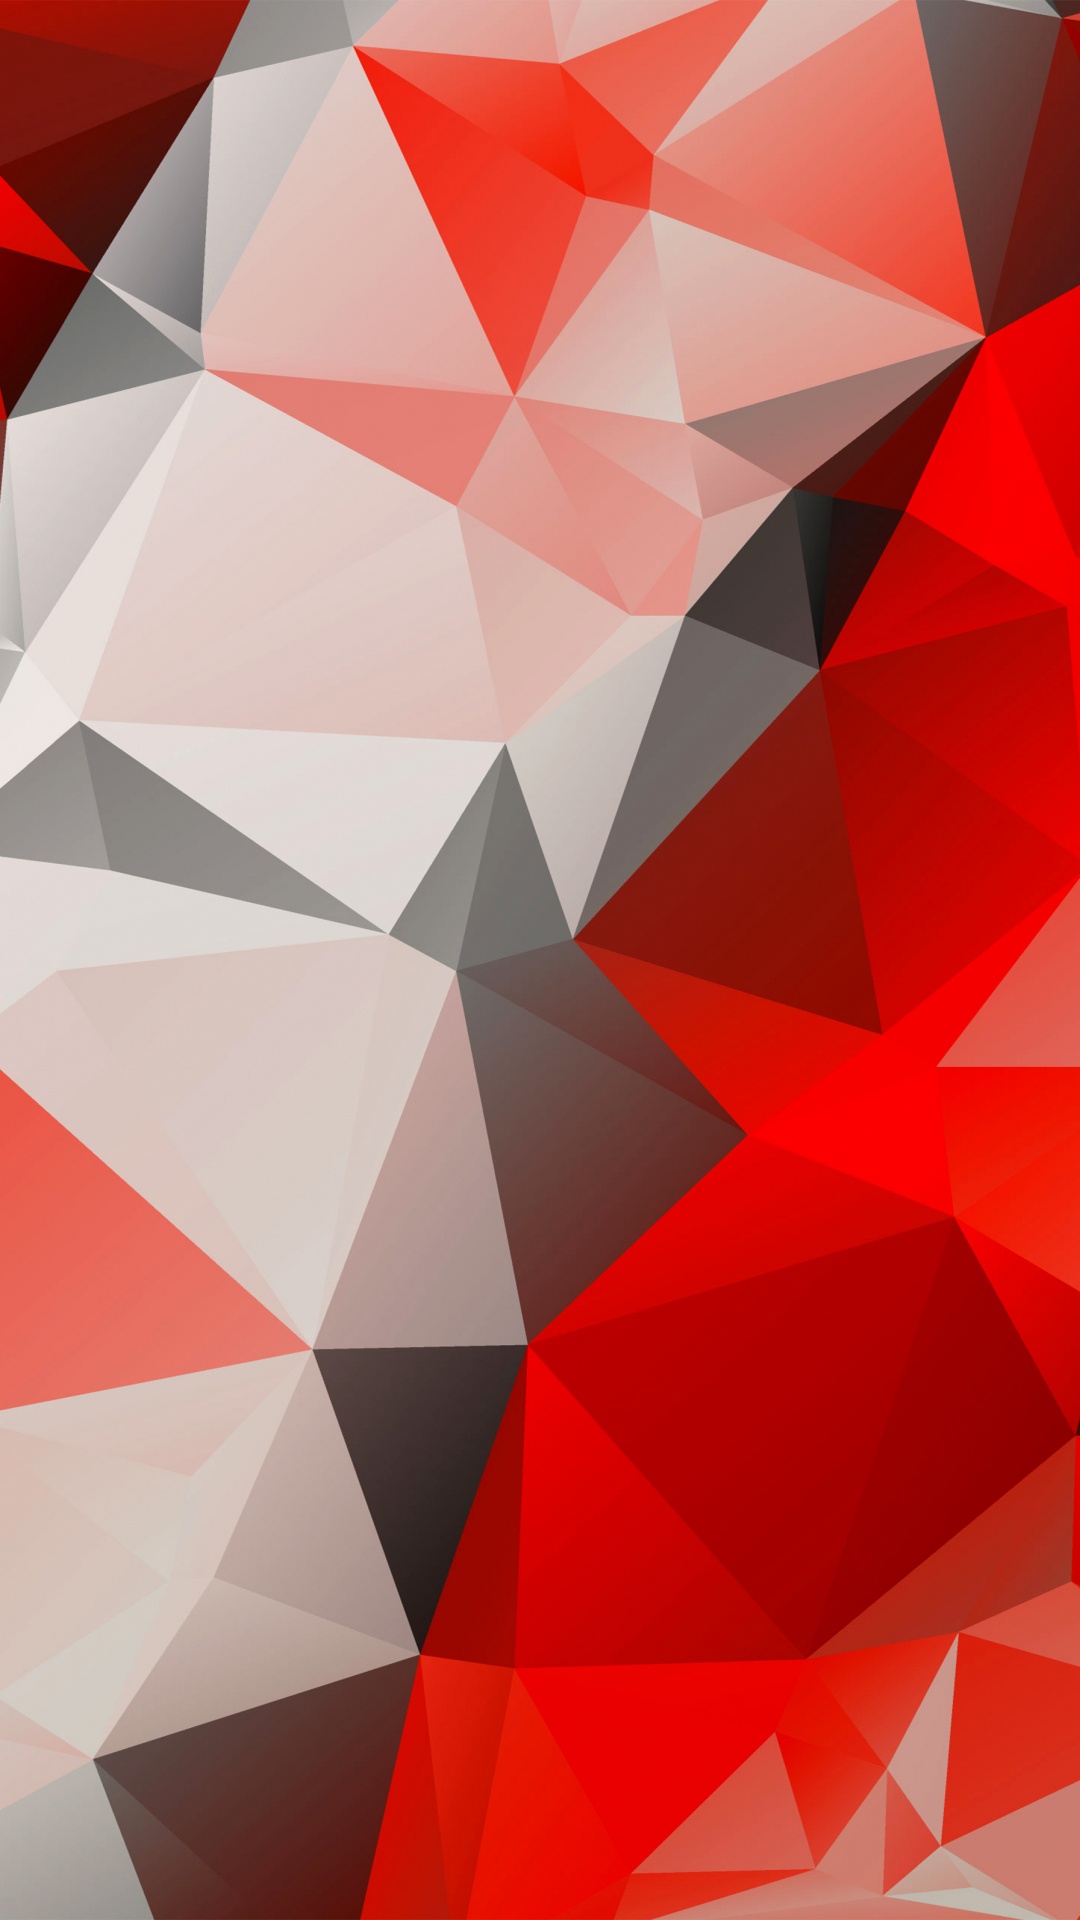 多边形, 红色的, 三角形, 对称, 矢量图形 壁纸 1080x1920 允许